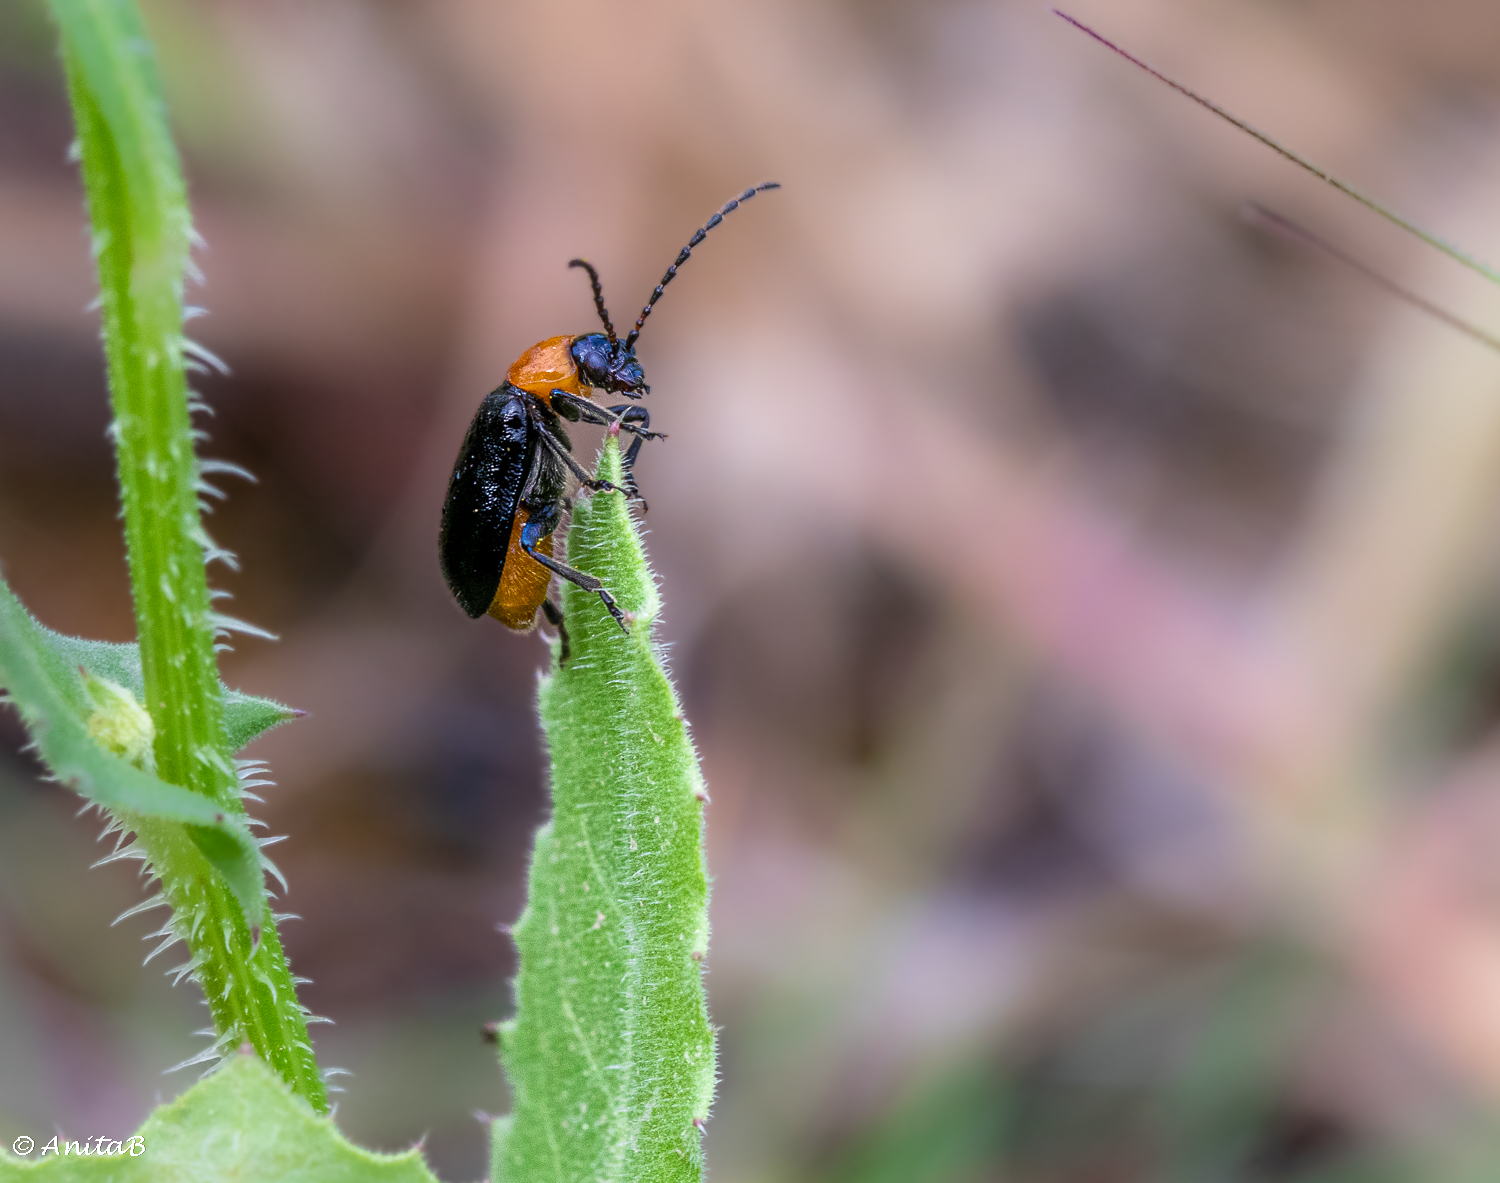 Meet Some Beetles